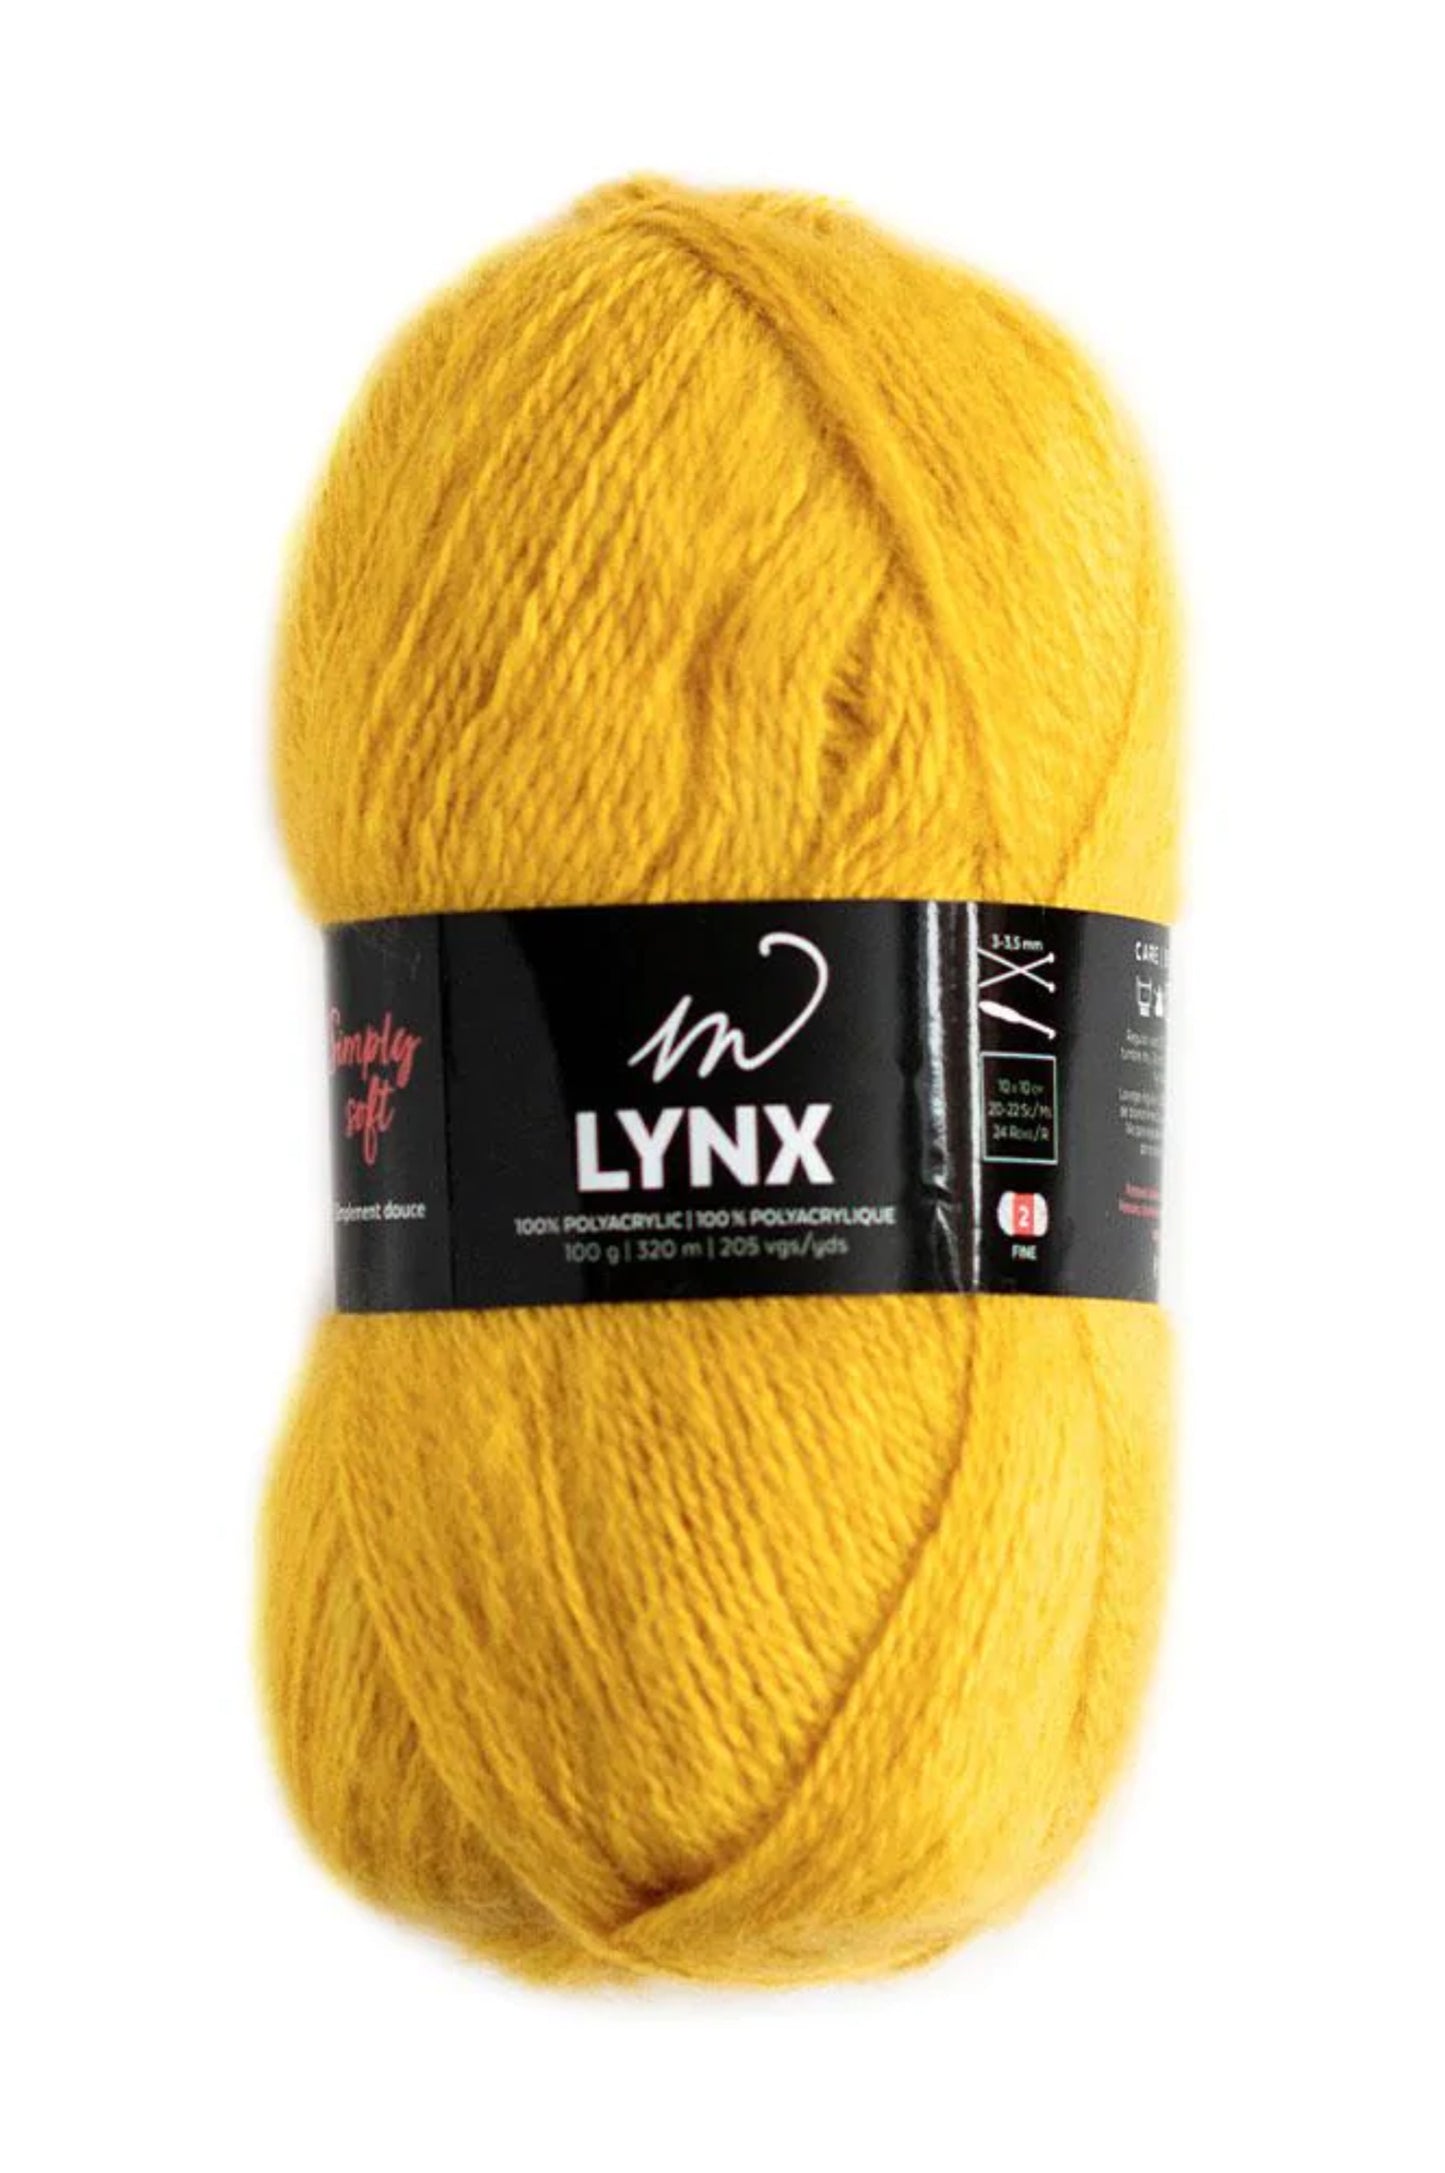 Lynx Yarn (100% Brushed Polyacrylic)- Golden Honey